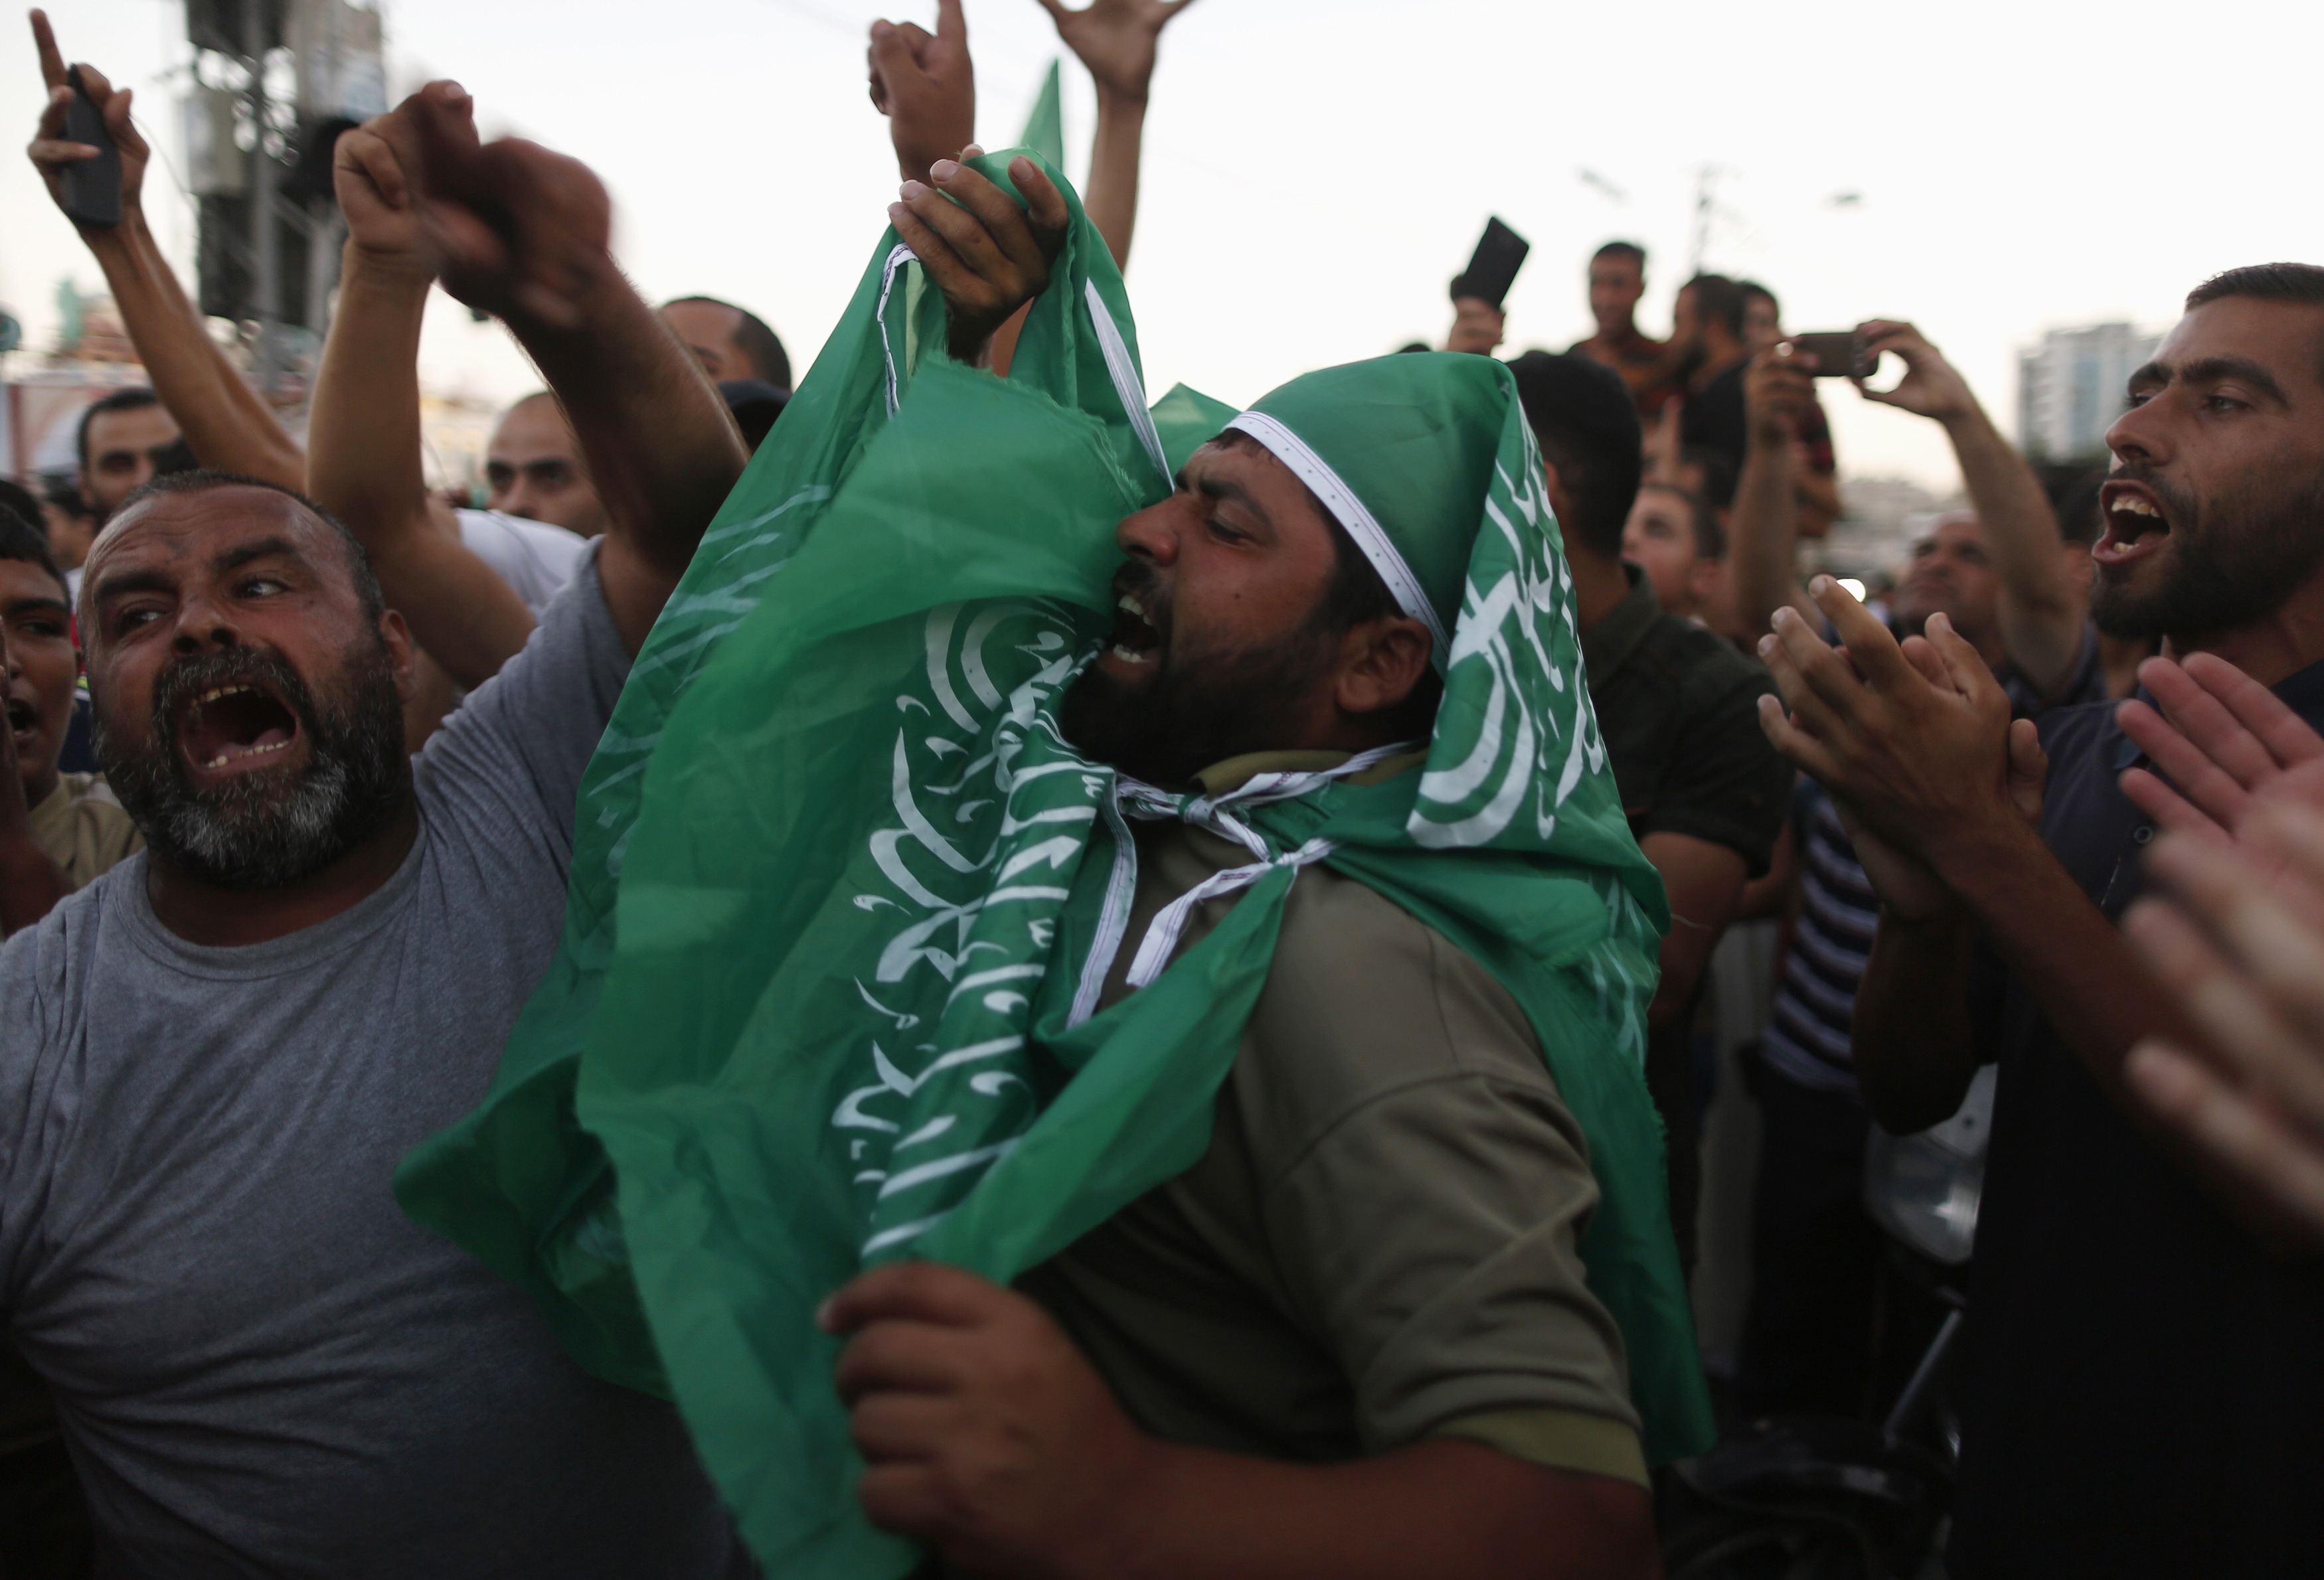 Σε εκεχειρία διαρκείας συμφώνησαν Χαμάς και Ισραήλ – Σε ισχύ από της 7μ.μ. της Τρίτης